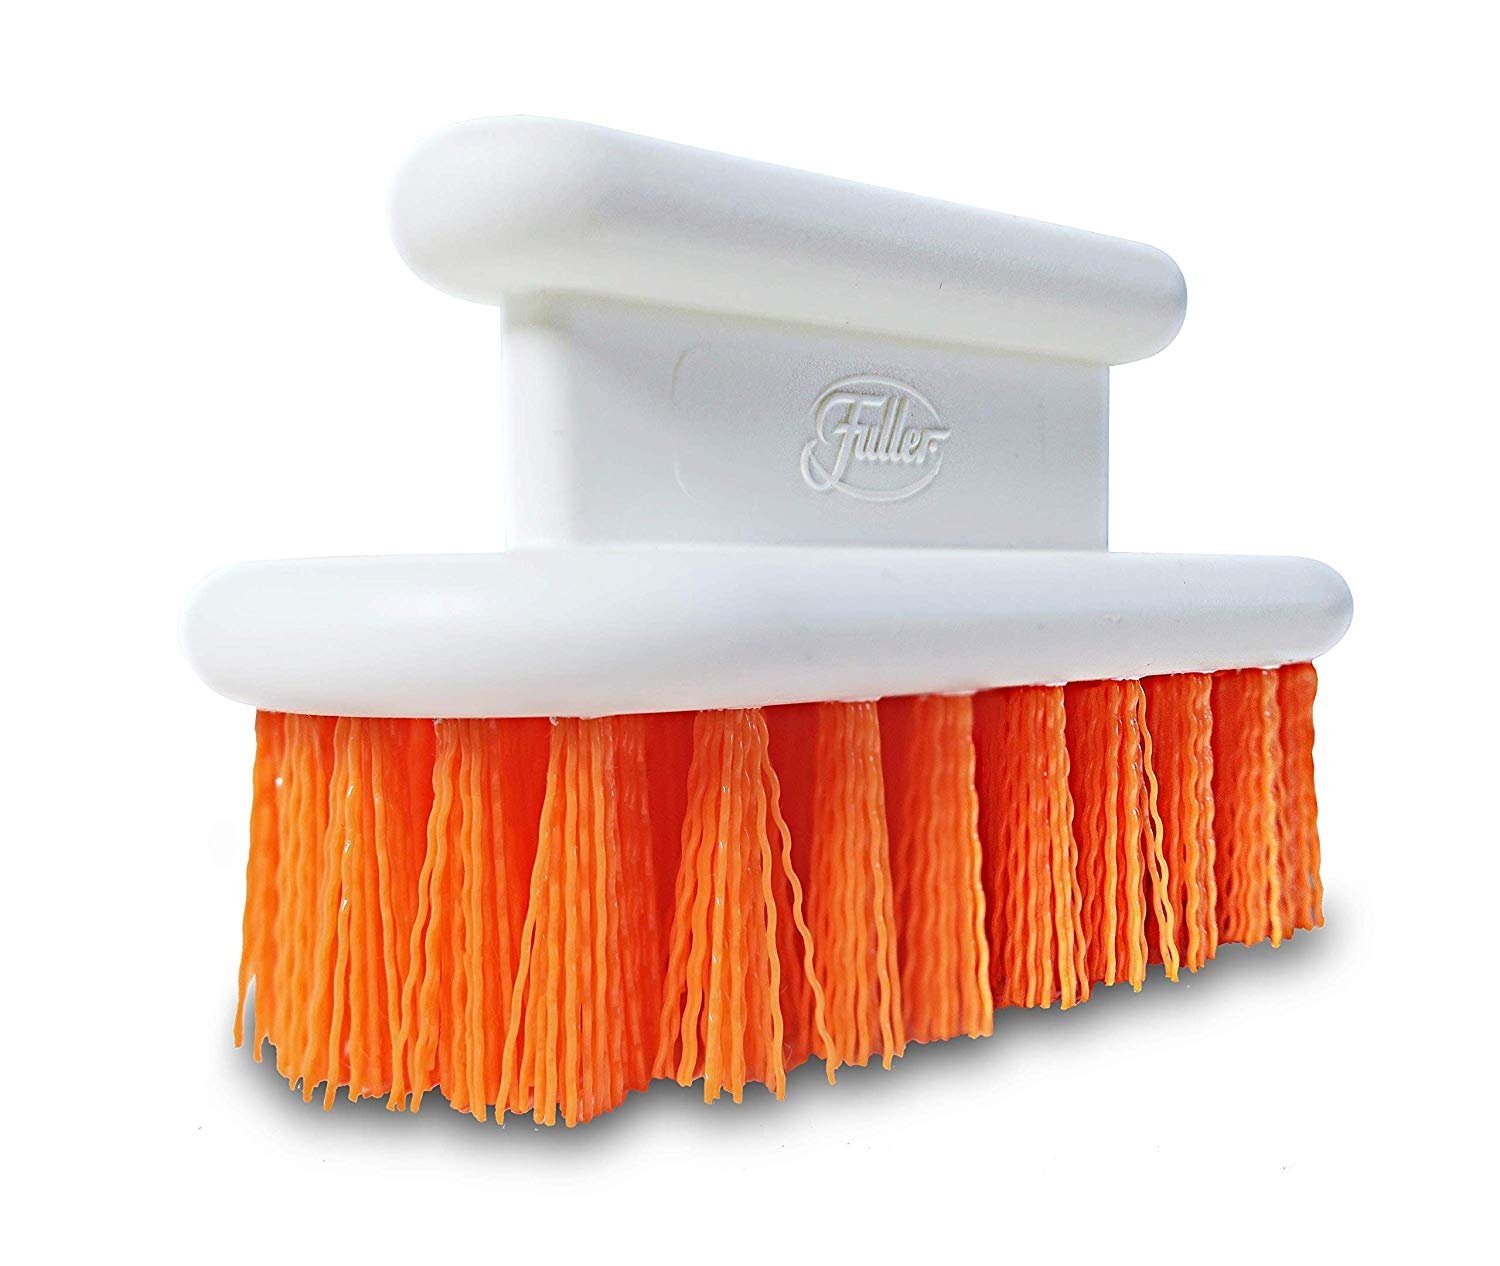 Orange Scrub Brush - Fregador todo propósito para la eliminación de manchas difíciles - Cepillos de limpieza - Fuller Brush Company